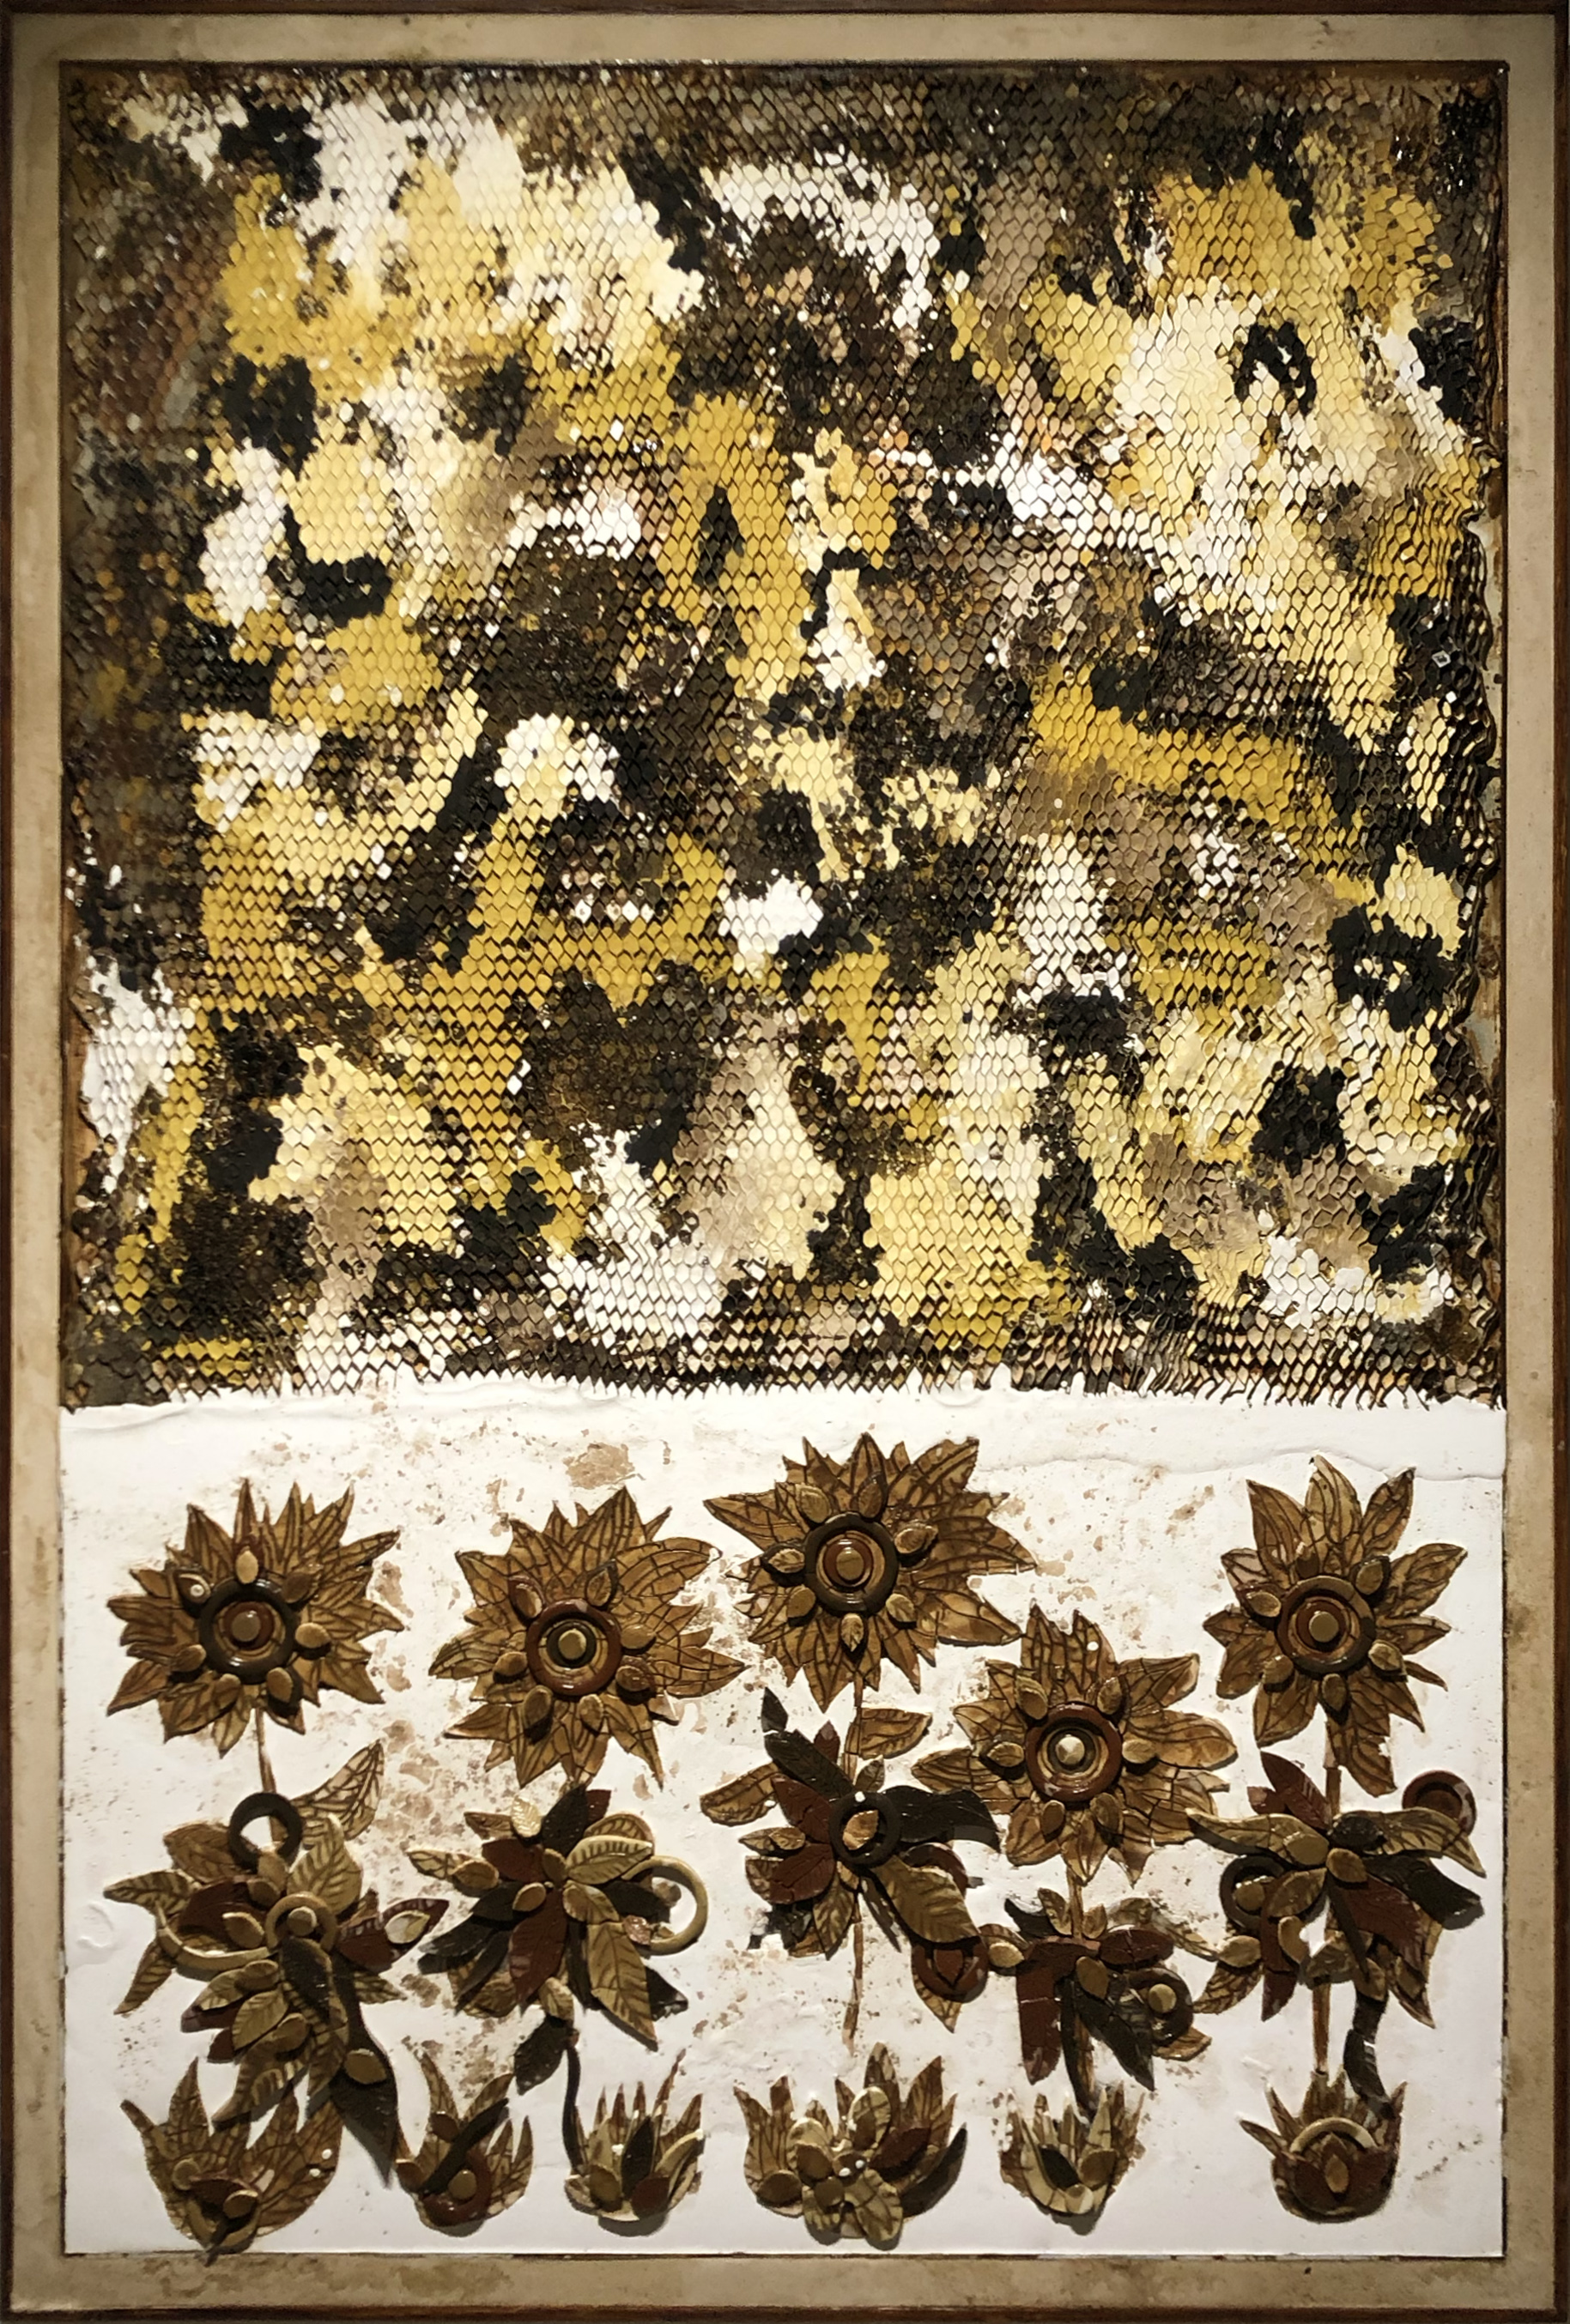 SCHILDGE Ugo - 2018 Beehive and Sunflowers_La Ruche et Les Tournesols_190x130 cm